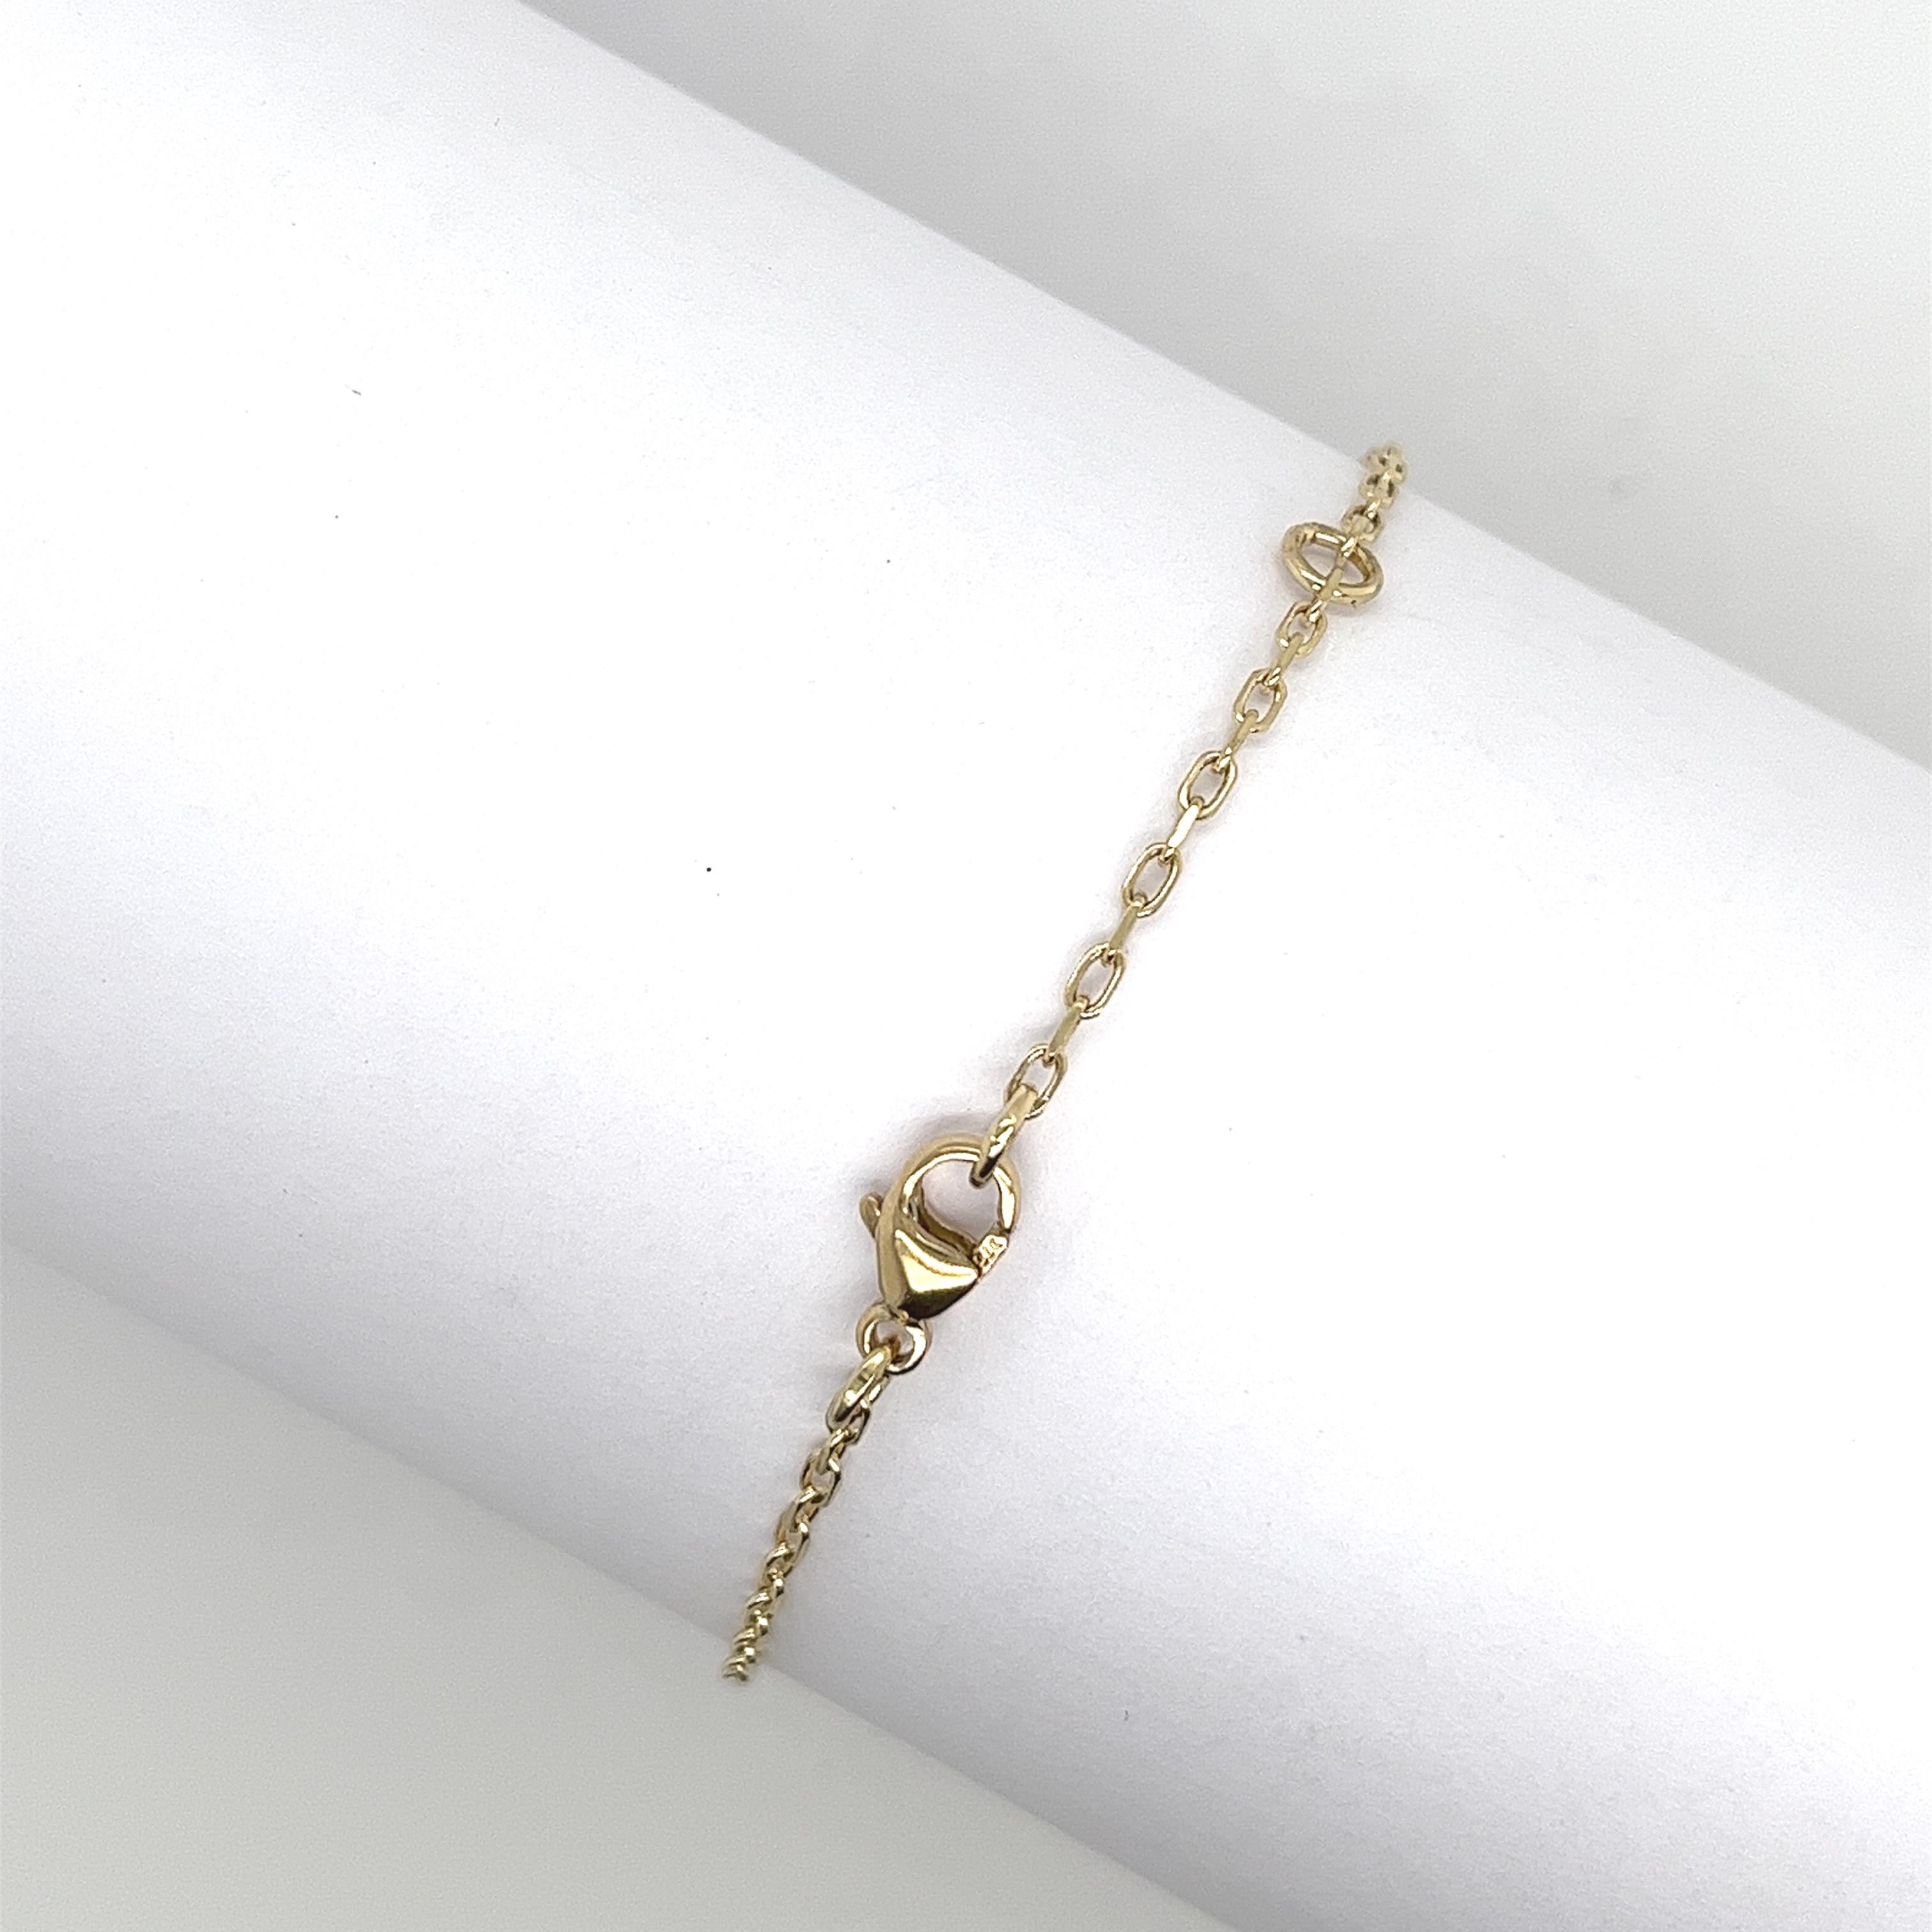 
Fabriqué par Jewellery Cave- notre bracelet maléfique de 0.08ct serti de diamants et d'opales rondes-
une fusion enchanteresse de style et de symbolisme. 
Réalisé en or jaune 9ct, ce bracelet envoûtant est orné d'une breloque en forme d'œil